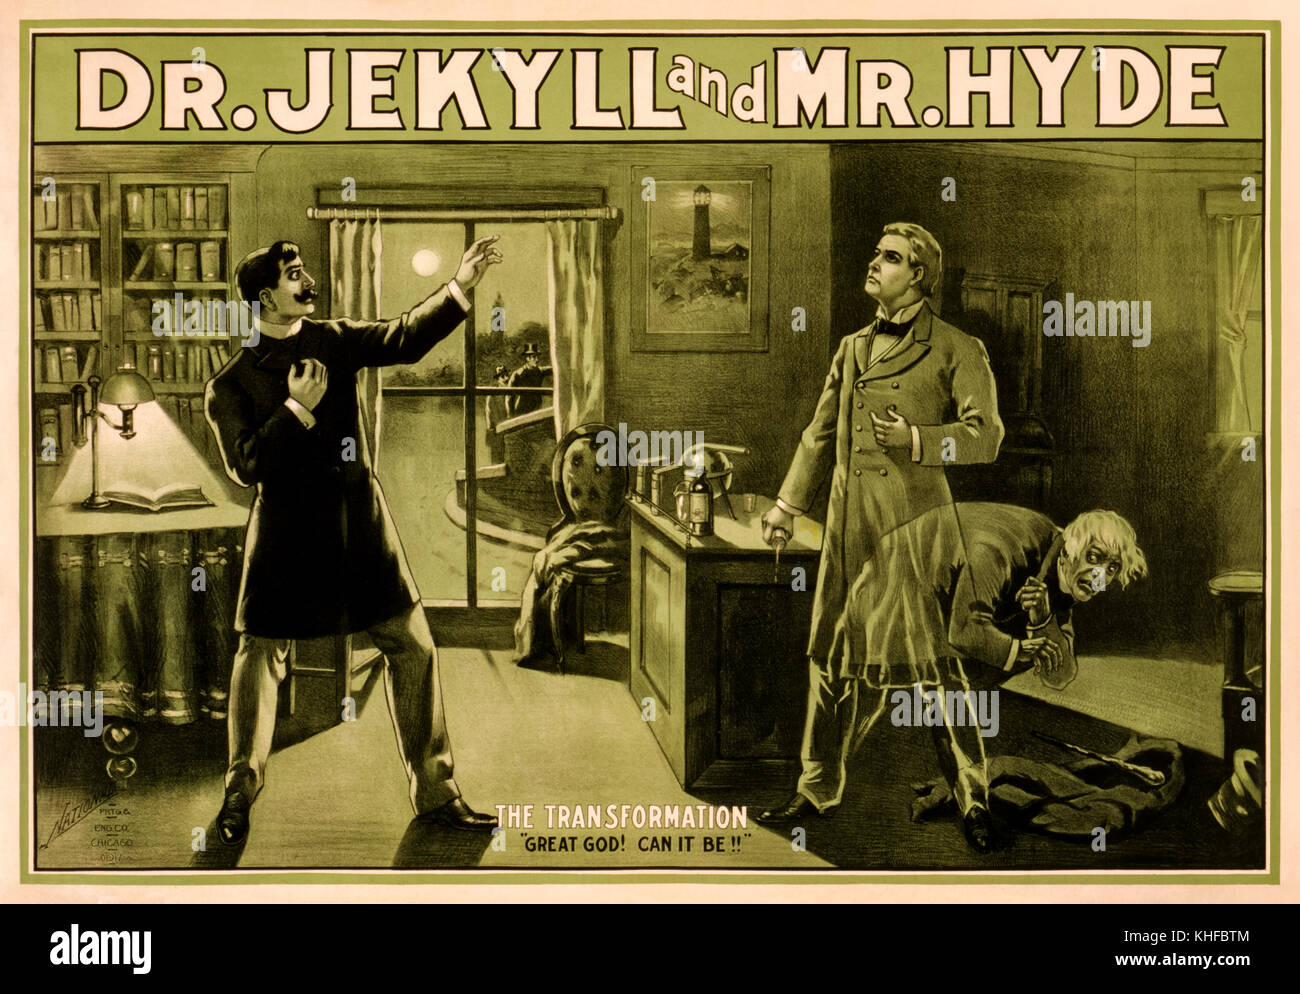 Playbill para 'Dr. Jekyll y Mr. Hyde' una etapa de adaptación de 1887 de Robert Louis Stevenson (1850-1894) novela gótica el extraño caso del Dr. Jekyll y Mr. Hyde", publicada en 1886. Richard Mansfield (1857-1907) desempeñó los personajes duales de Jekyll y Hyde. Póster a partir de 1888 el rendimiento en Hooley, del teatro, Chicago subtituladas 'la transformación. 'Gran Dios! Puede ser!!'' mostrando el Dr. Hastie Lanyon presenciando el cambio. Foto de stock